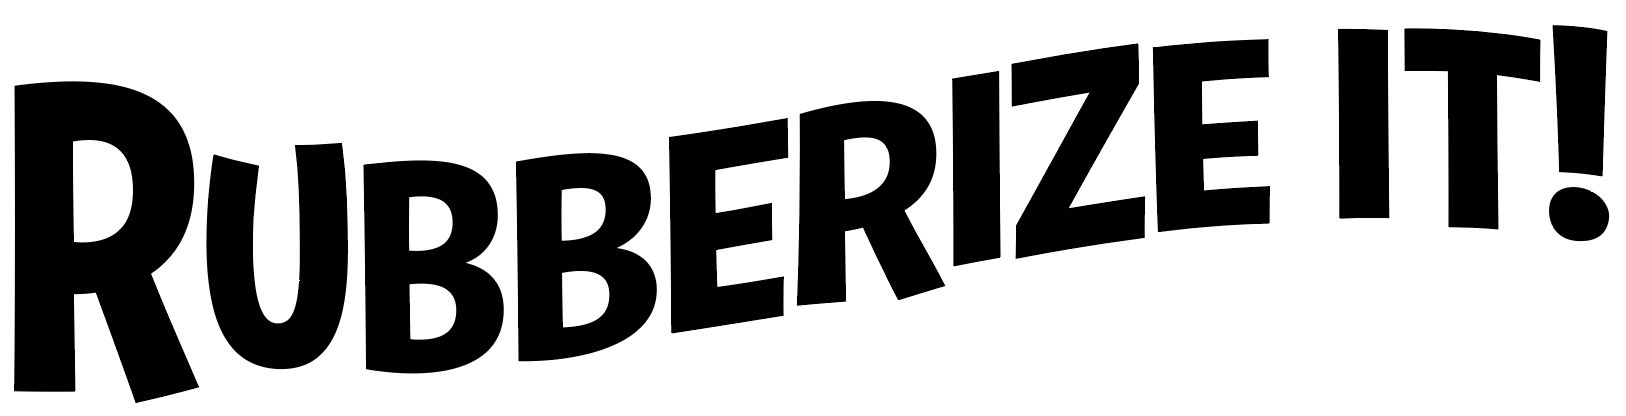 rubber logo